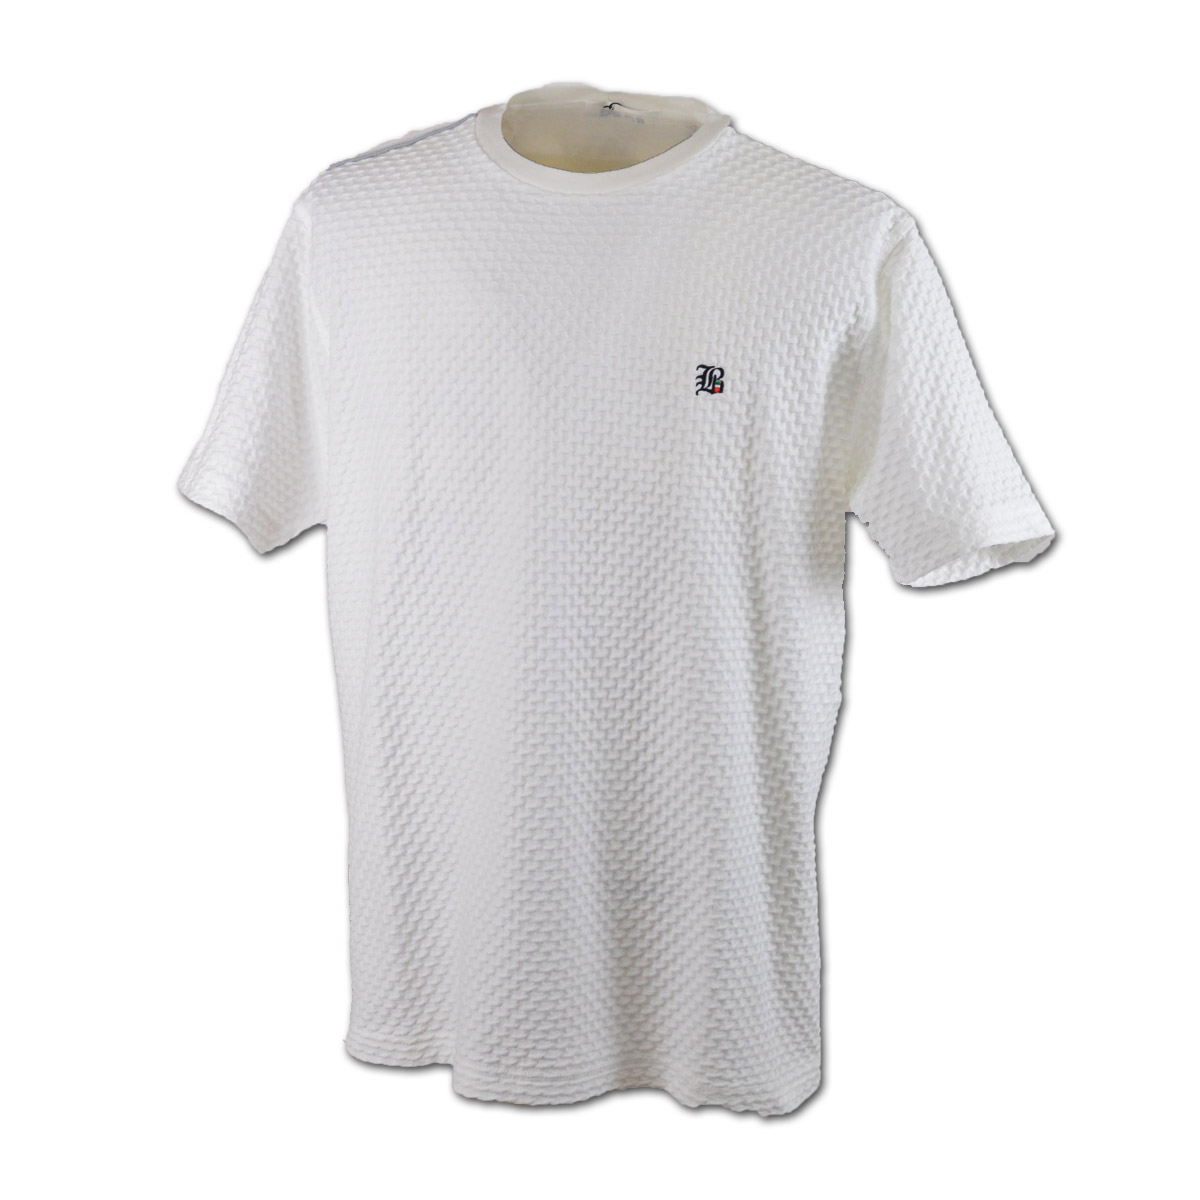 BBCO ビビコ 半袖Tシャツ メンズ 春夏用 白 黒 M L LL 41-2502-01